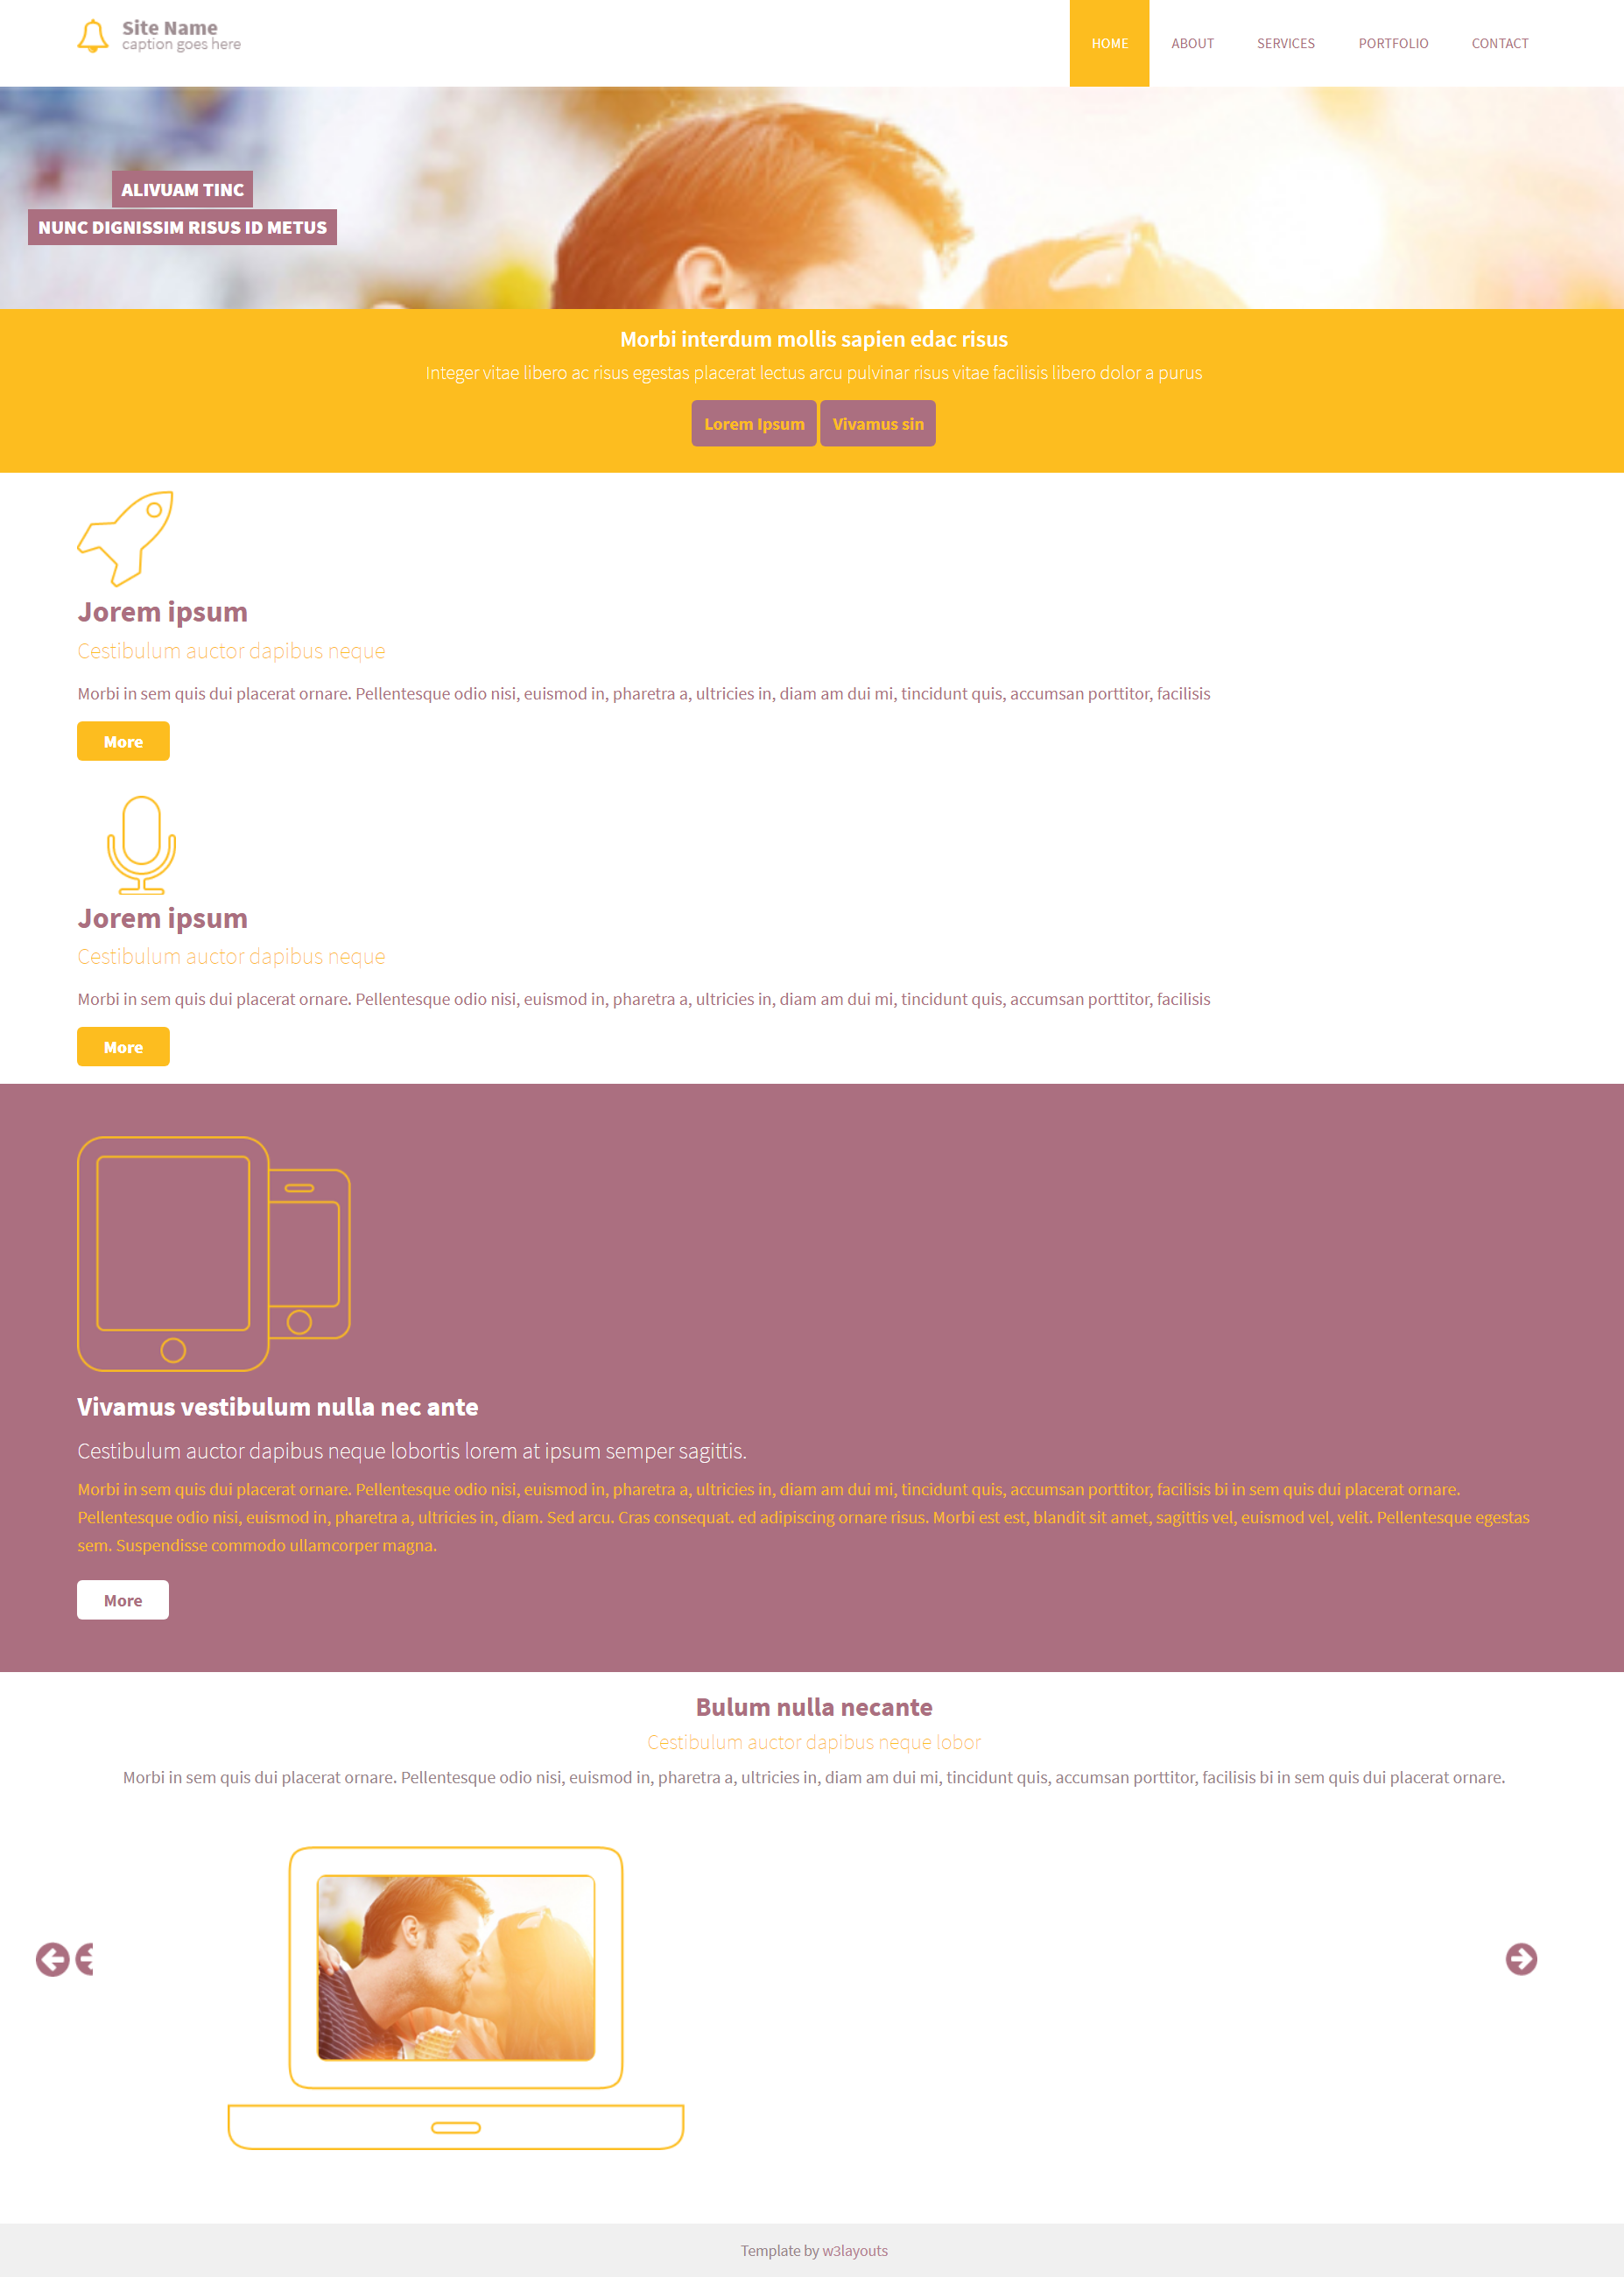 HTML黄色大气形式移动设备信息网页模板代码